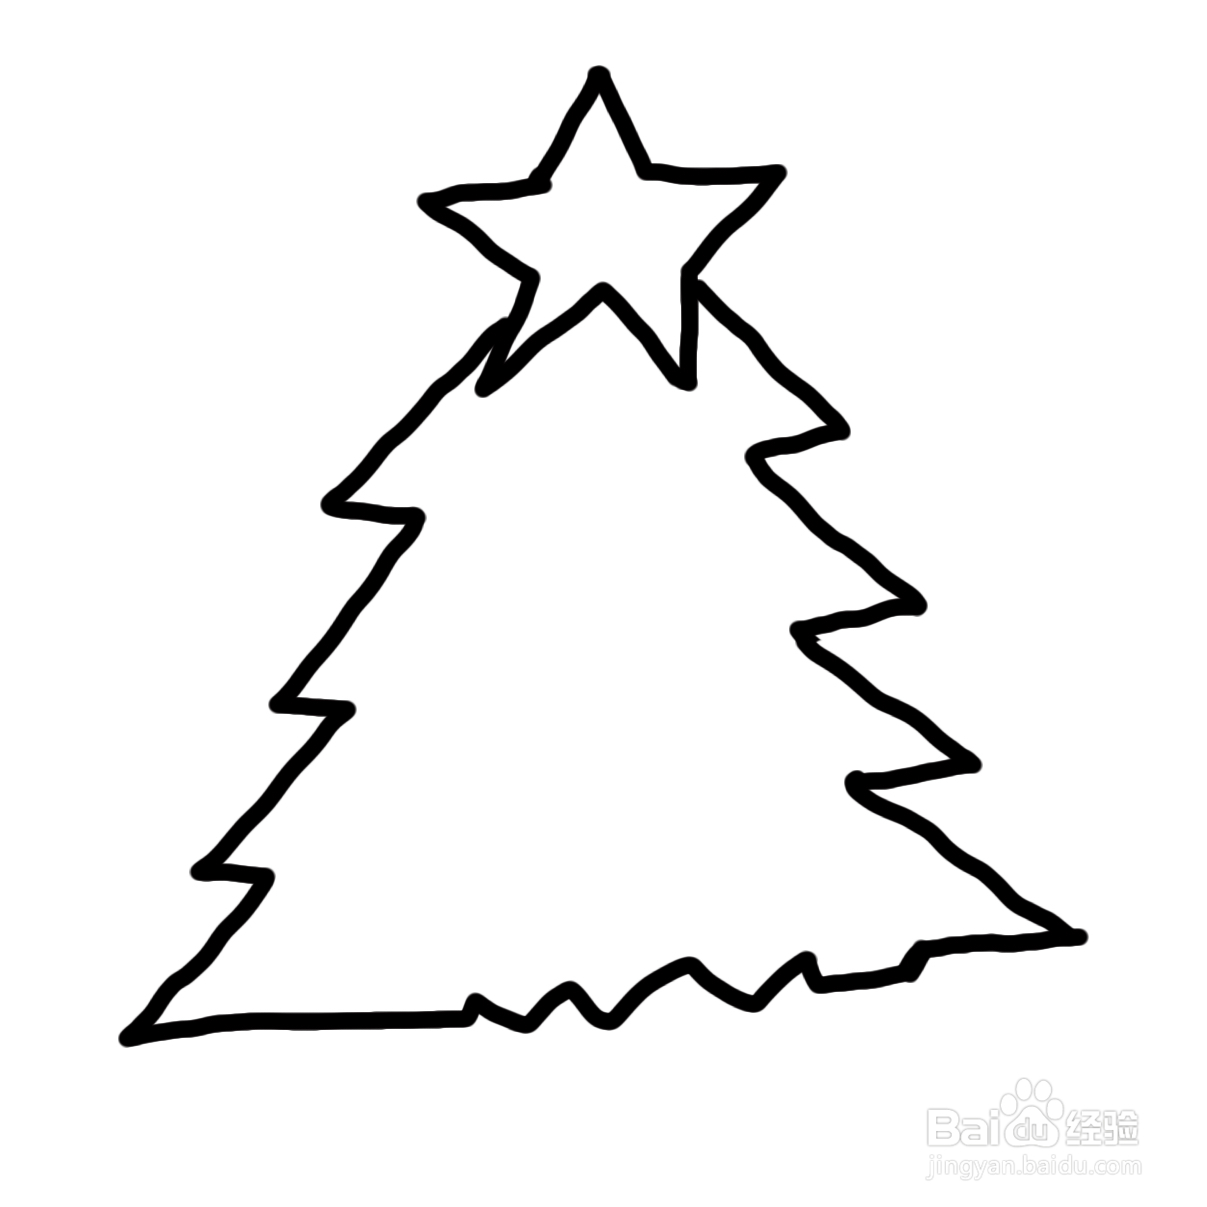 第二步,画出五角星下面的圣诞树的形状,曲折的三角形